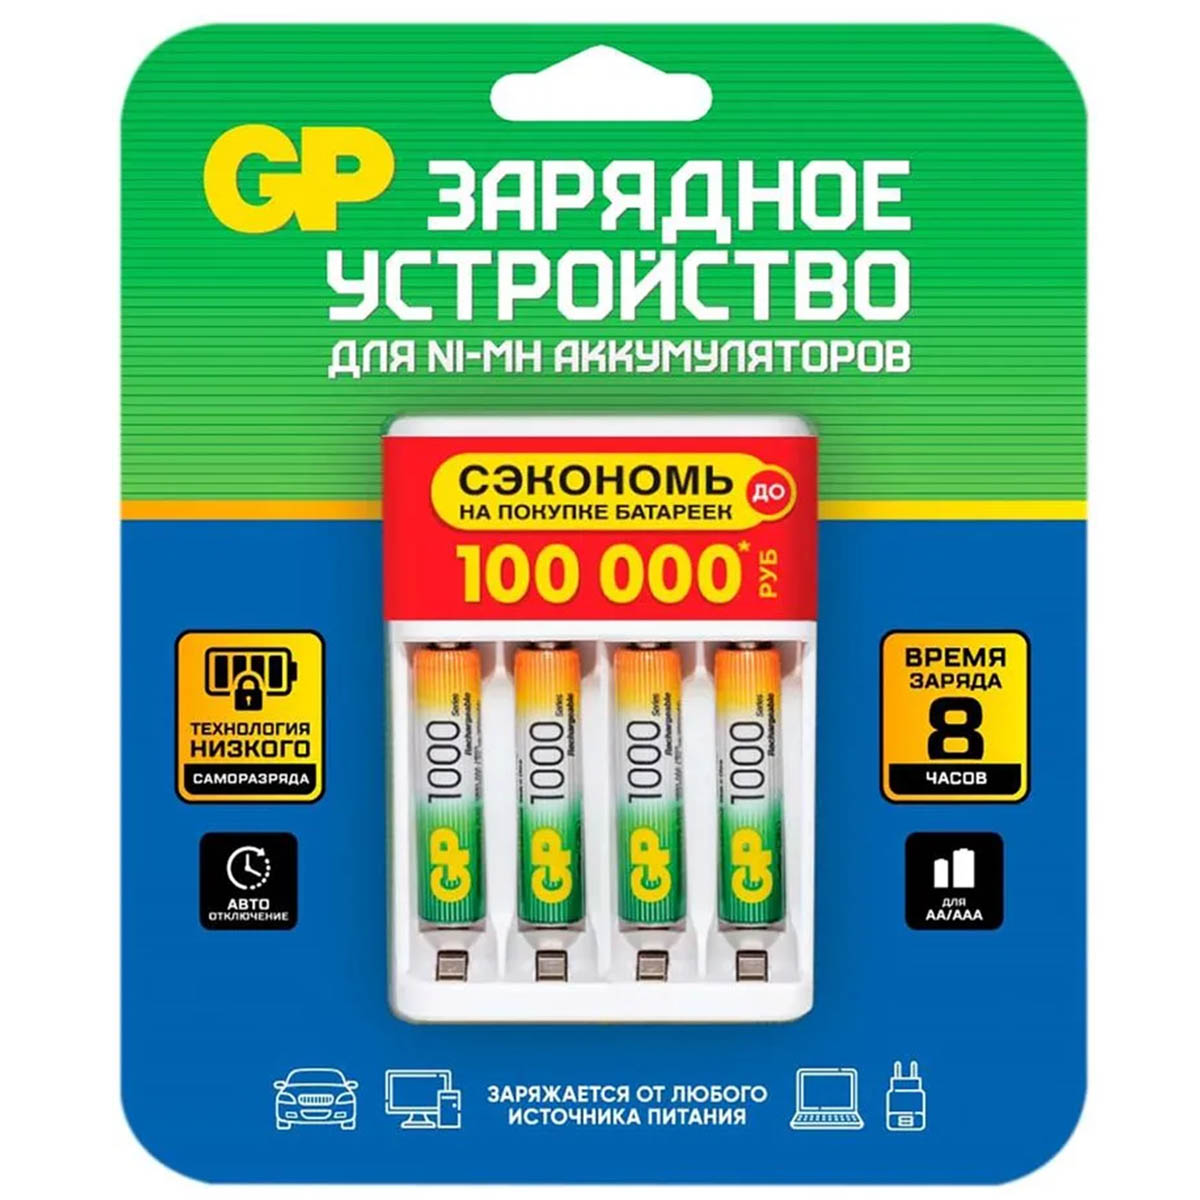 Зарядное устройство GP для аккумуляторов NiMH GP100AAAHC/CPBR-2CR4 AAA, AAA + 4 шт. аккумуляторных батареек AAA 1000mAh